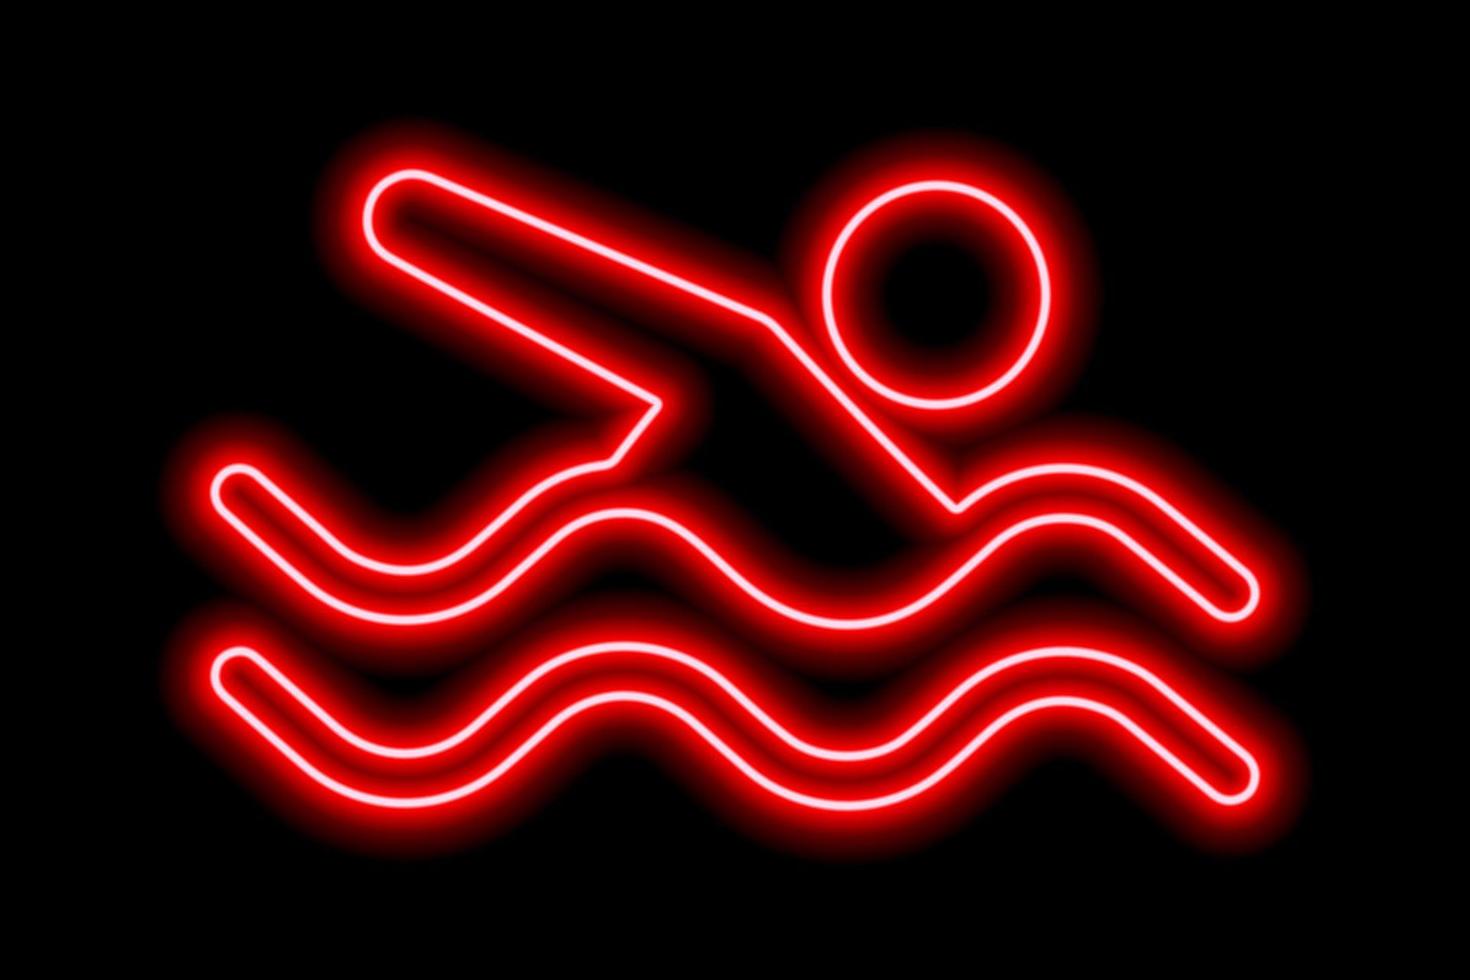 silueta roja neón de nadador de estilo libre con olas sobre fondo negro vector